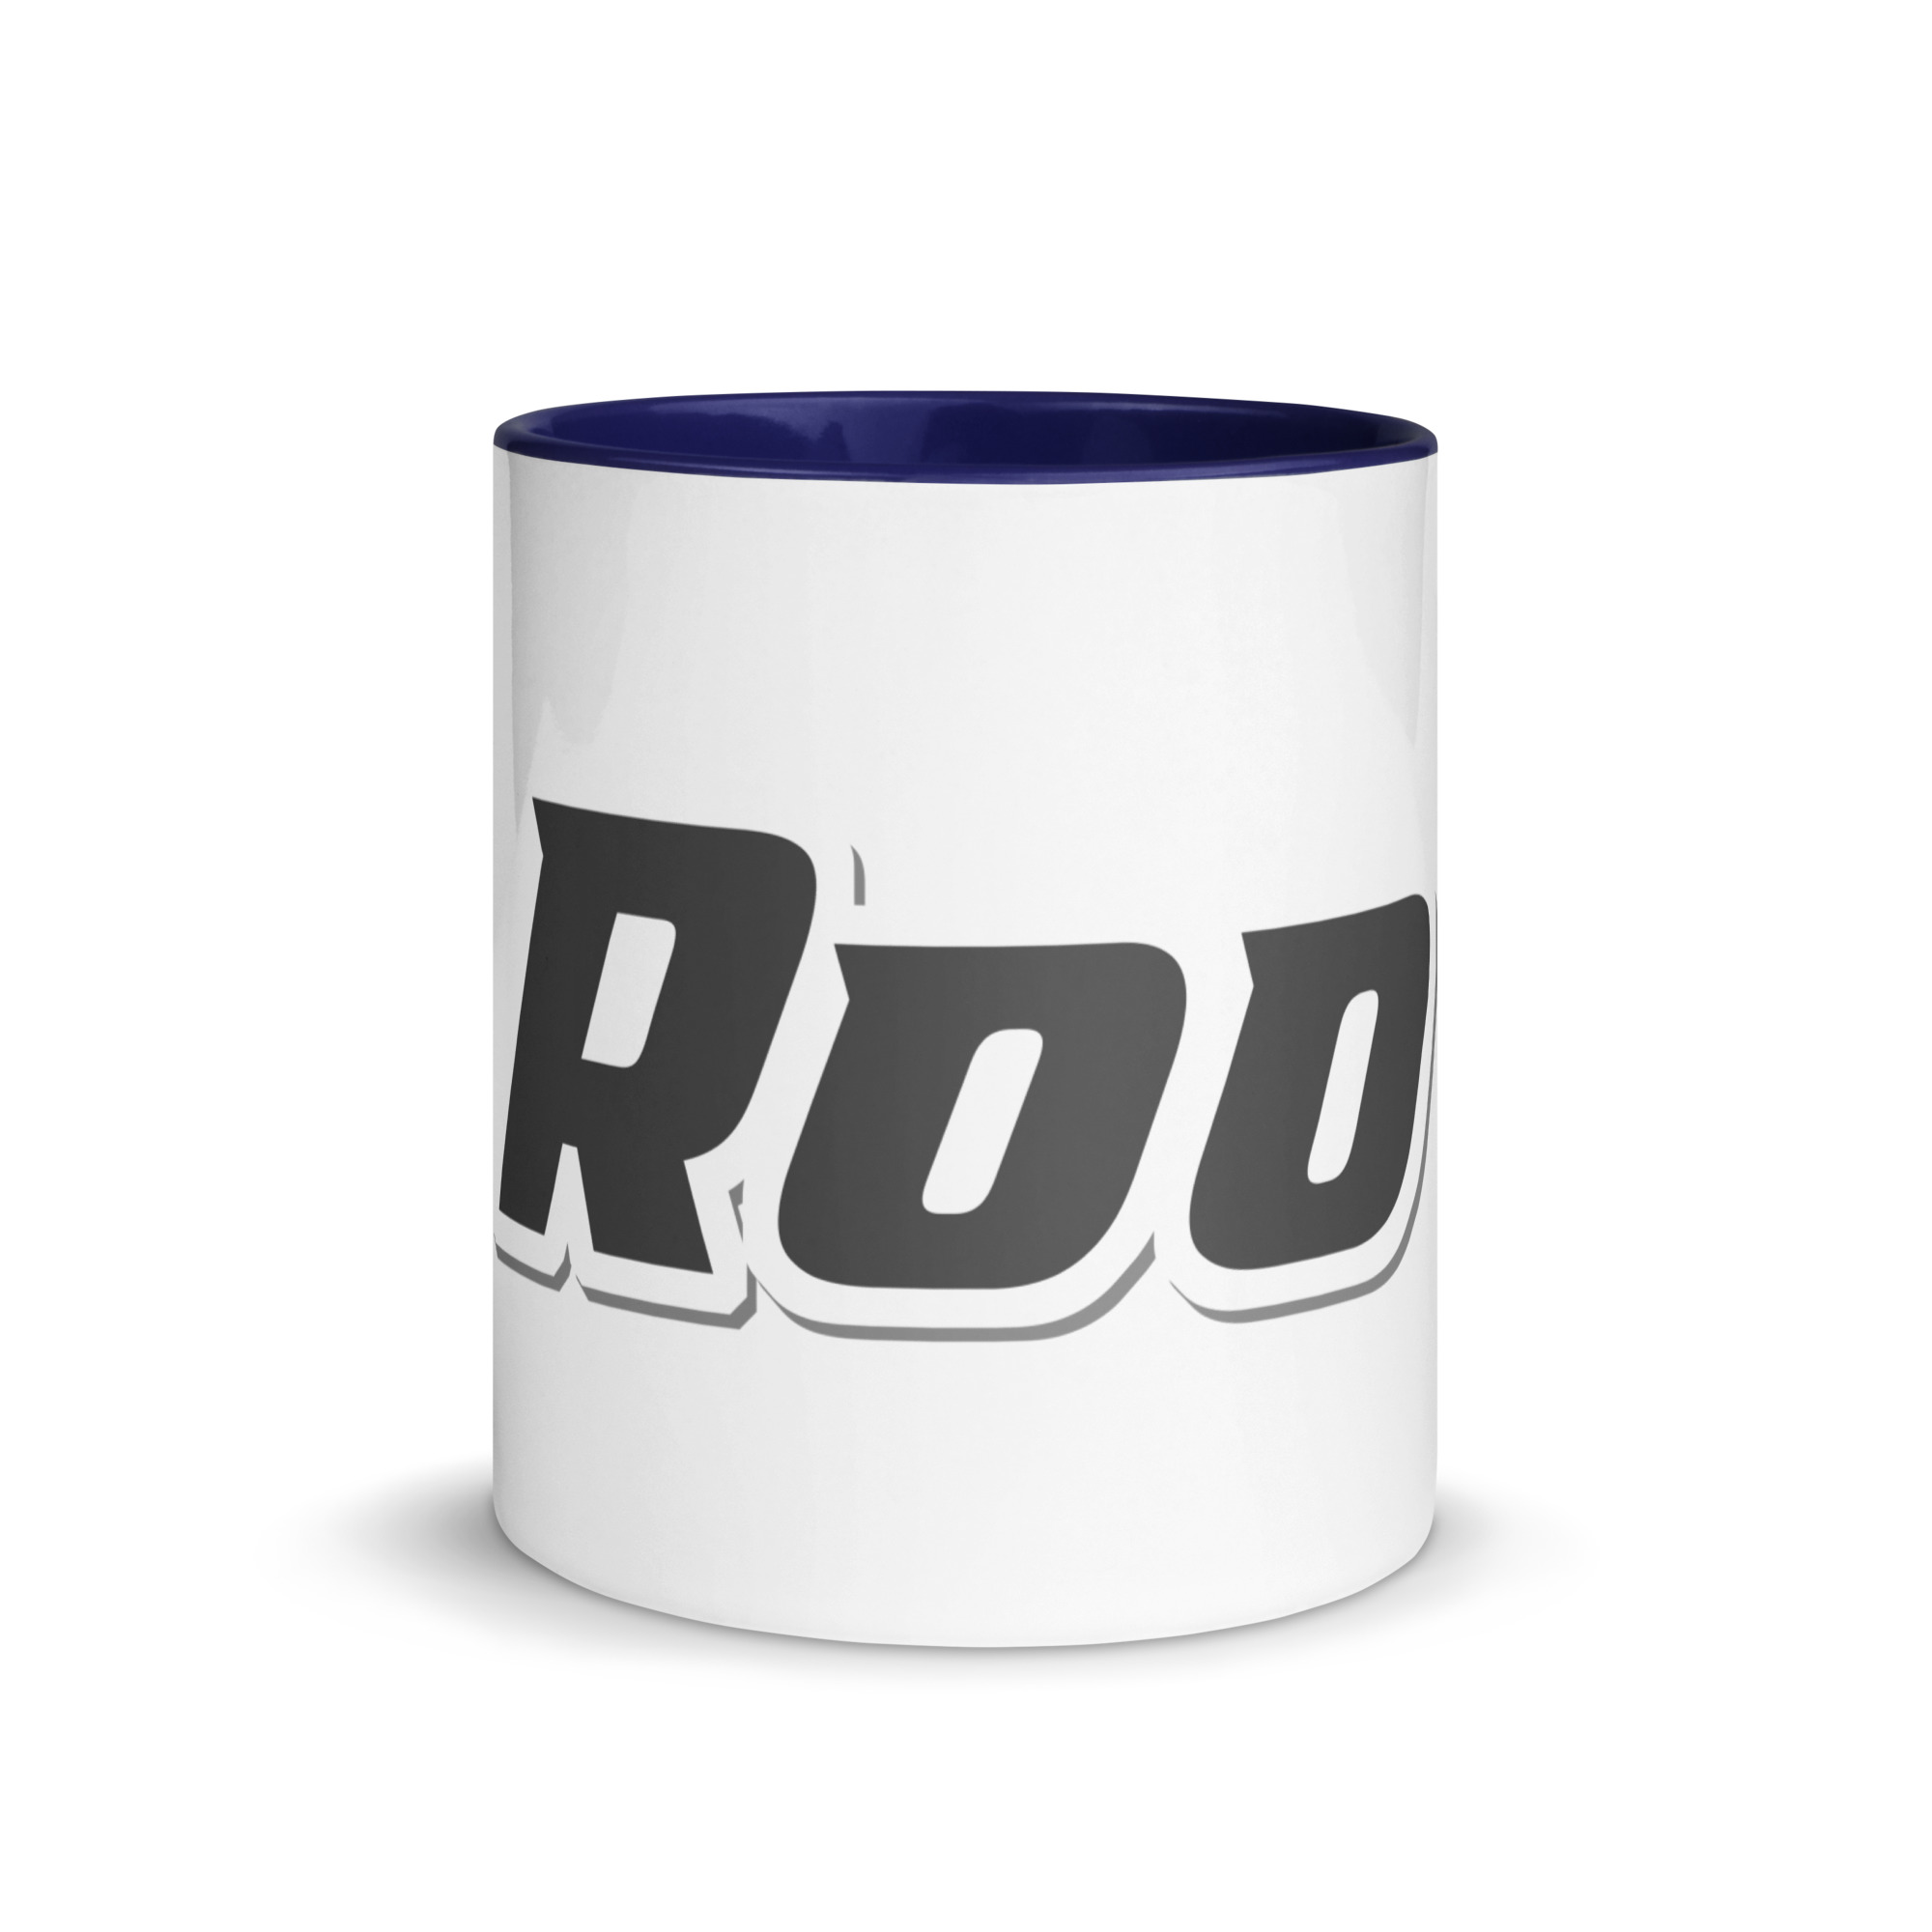 white-ceramic-mug-with-color-inside-dark-blue-11-oz-front-6525b50608a10.jpg